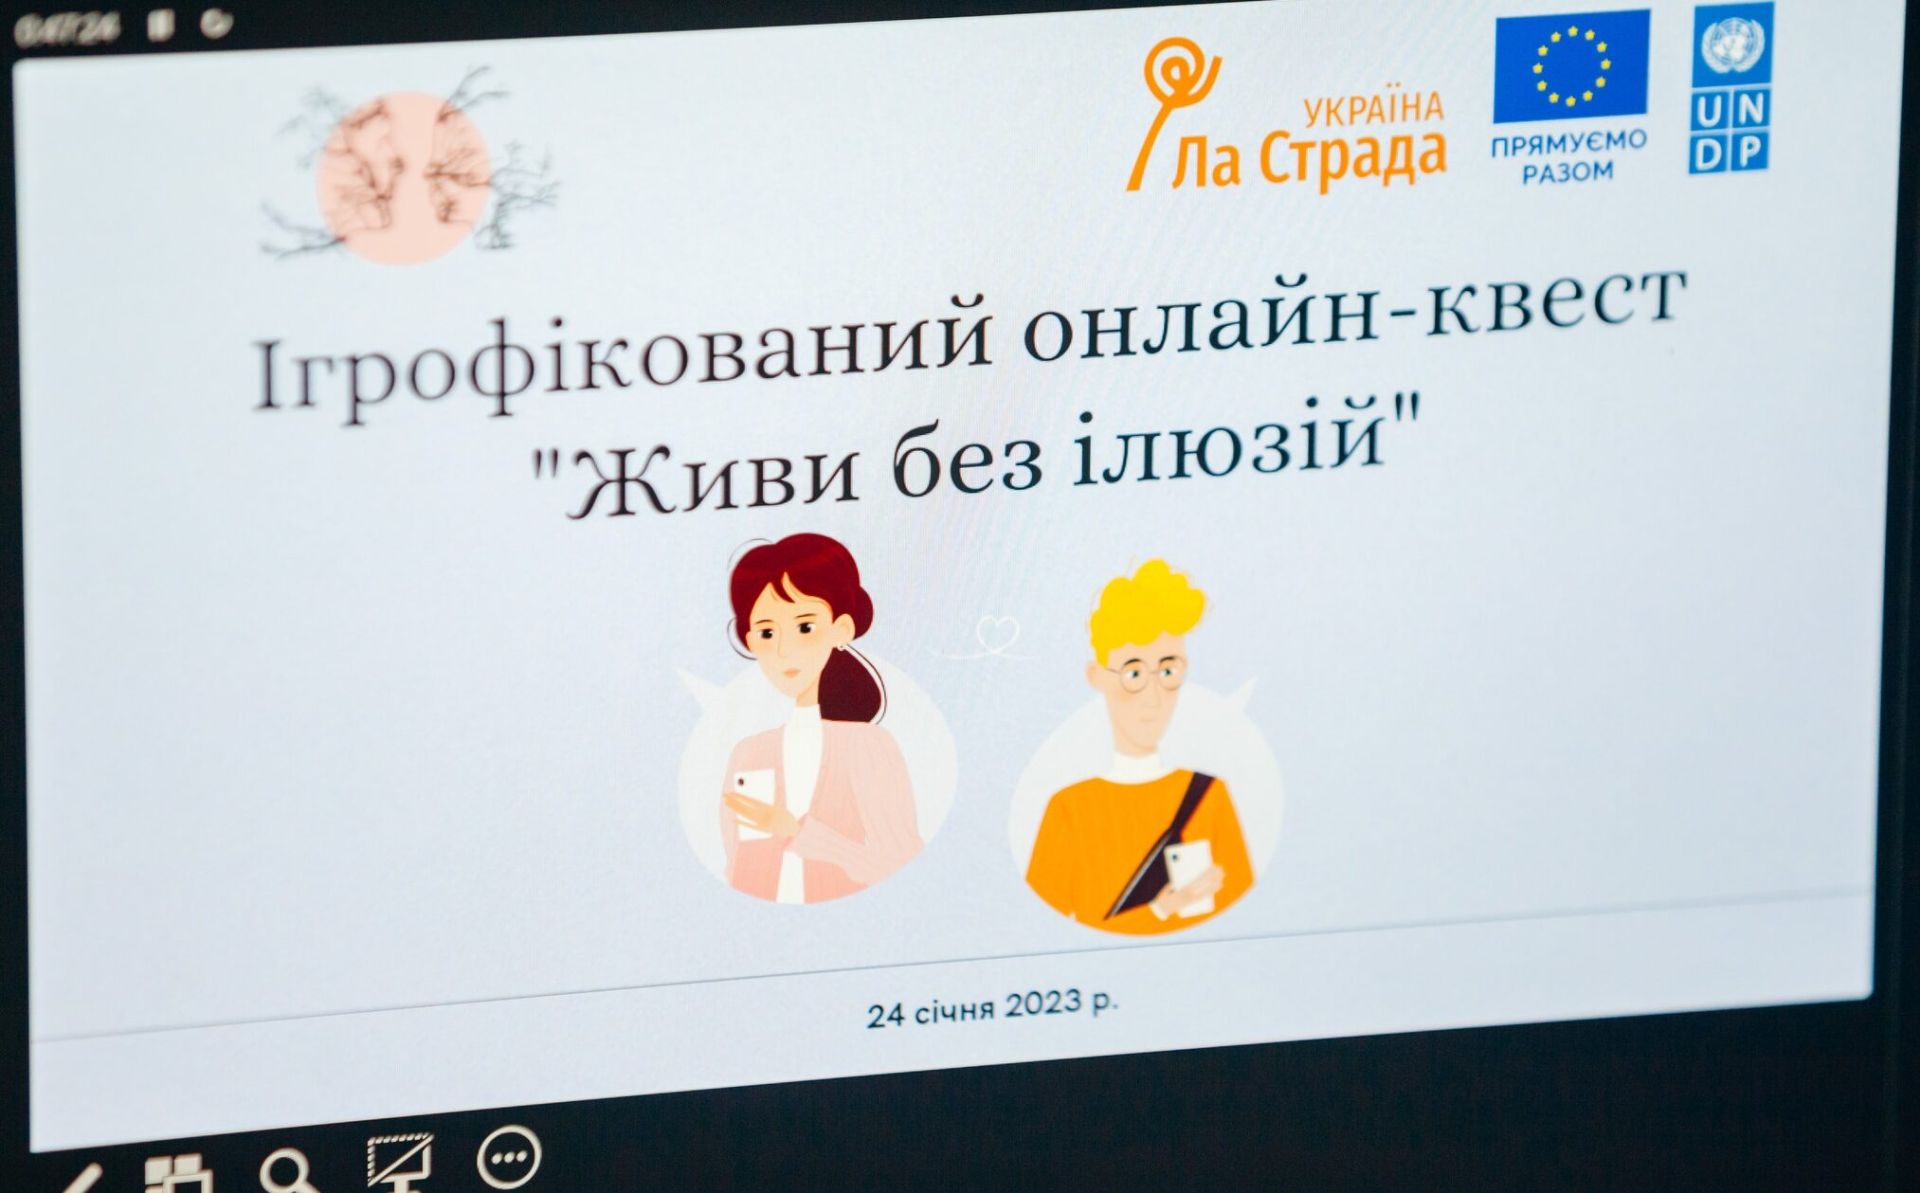 Украина: новая онлайн-игра поможет молодым людям избежать насилия в отношениях